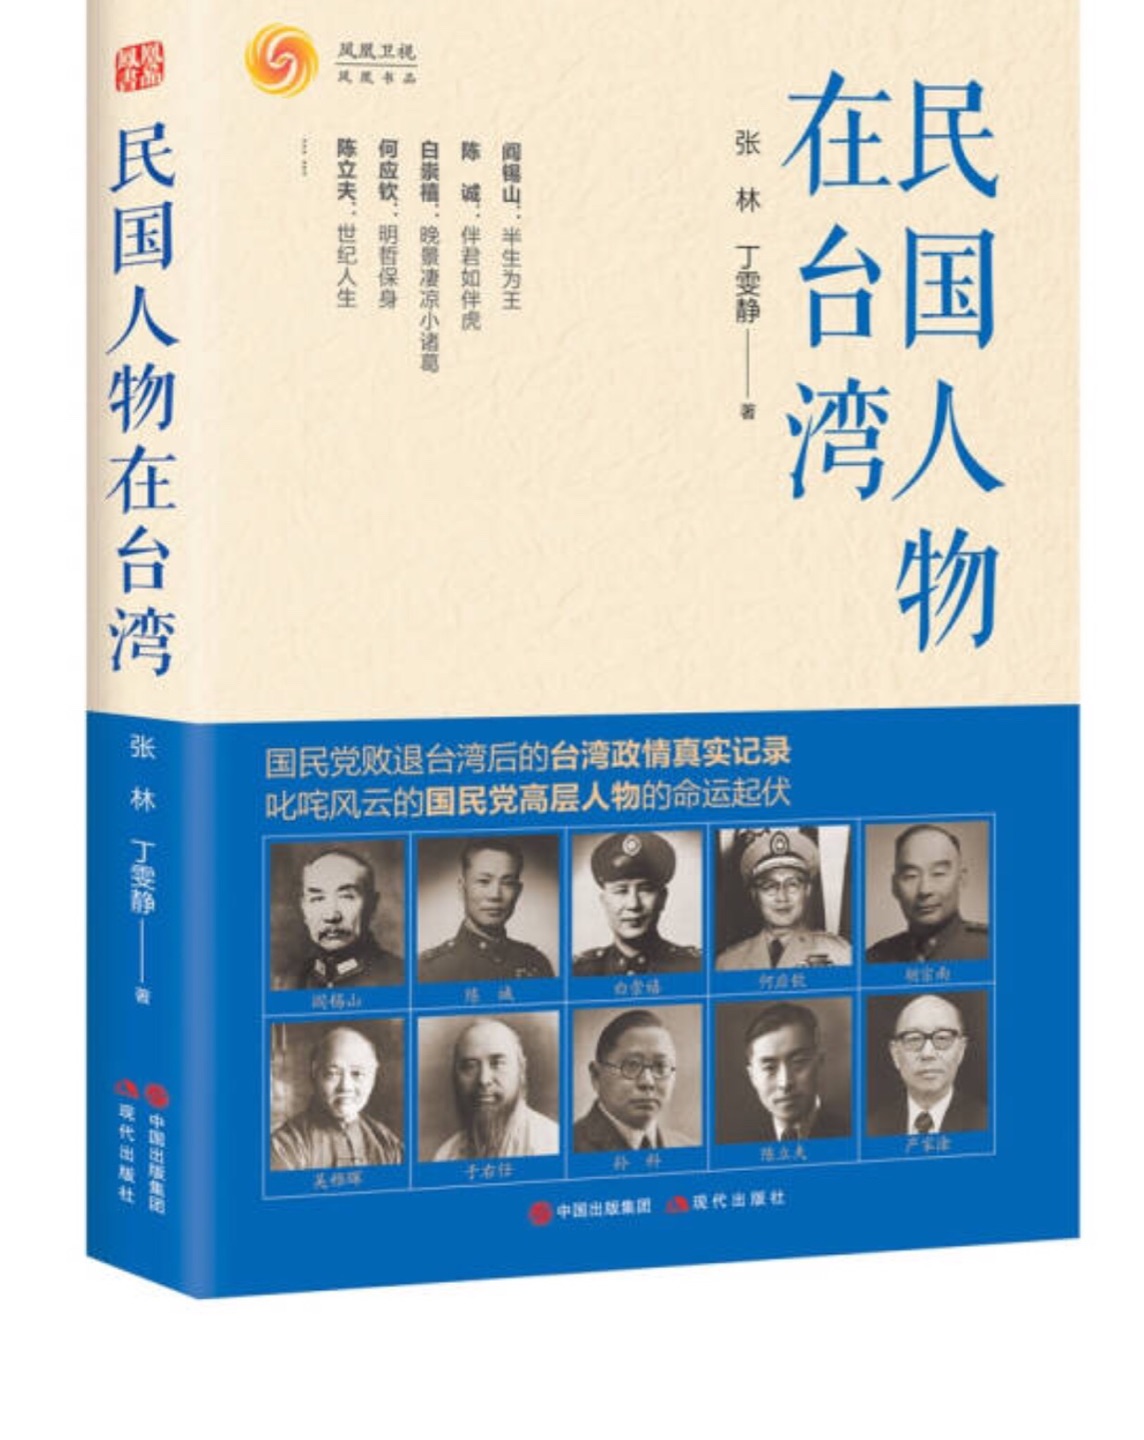 了解下台湾历史，就是此类书不怎么参加活动。